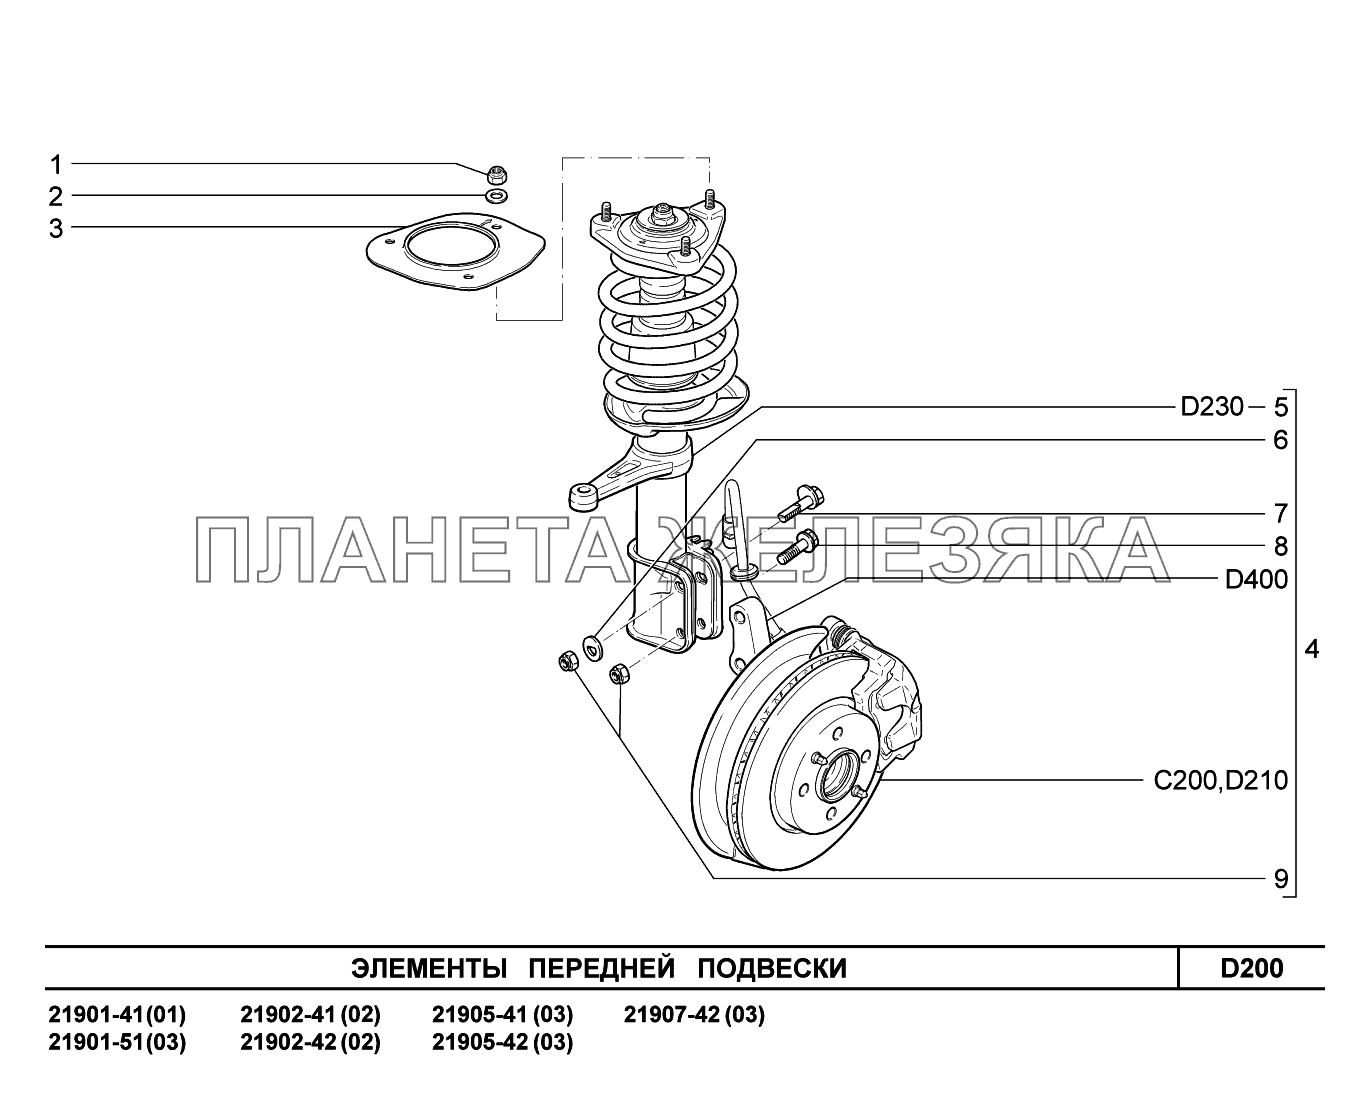 D200. Элементы передней подвески Lada Granta-2190